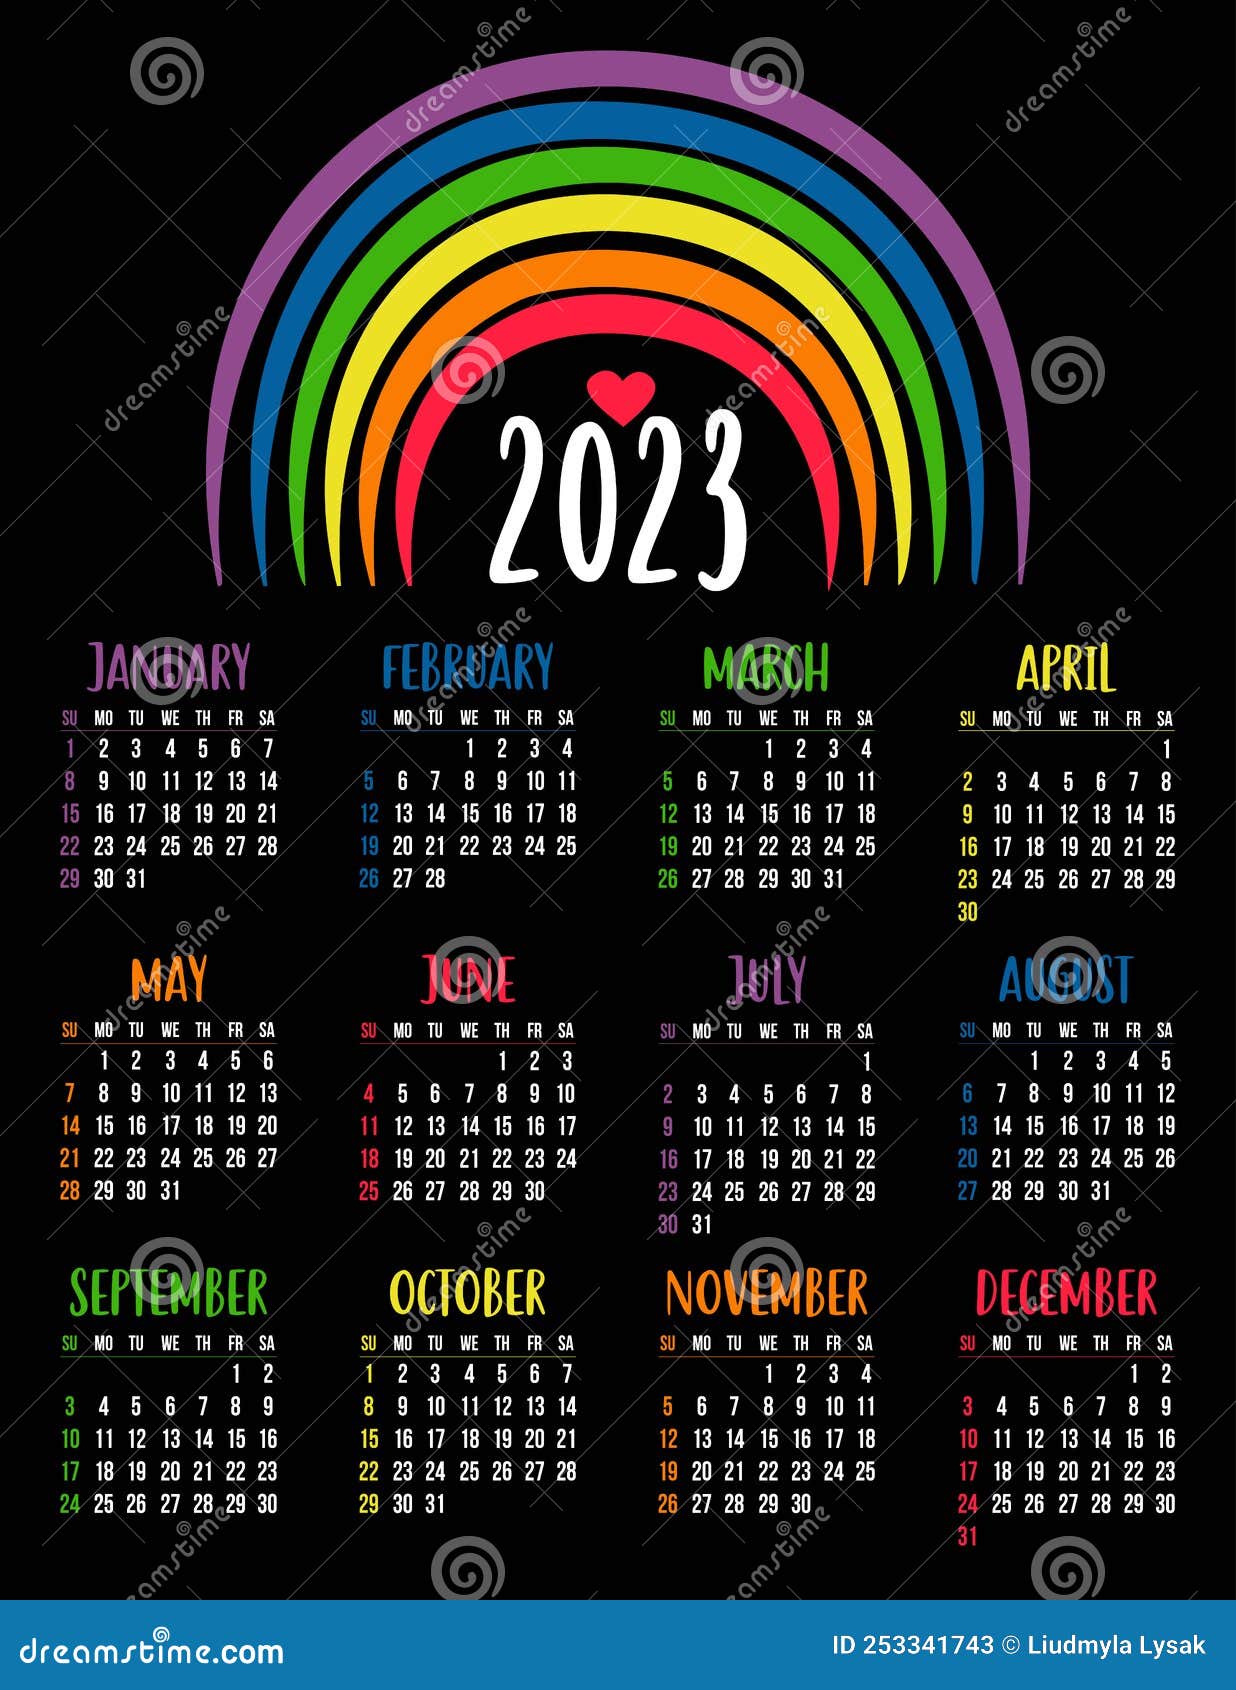 Calendar 2023 with LGBTQ Symbol with Rainbow. LGBT Flag Rainbow Colors